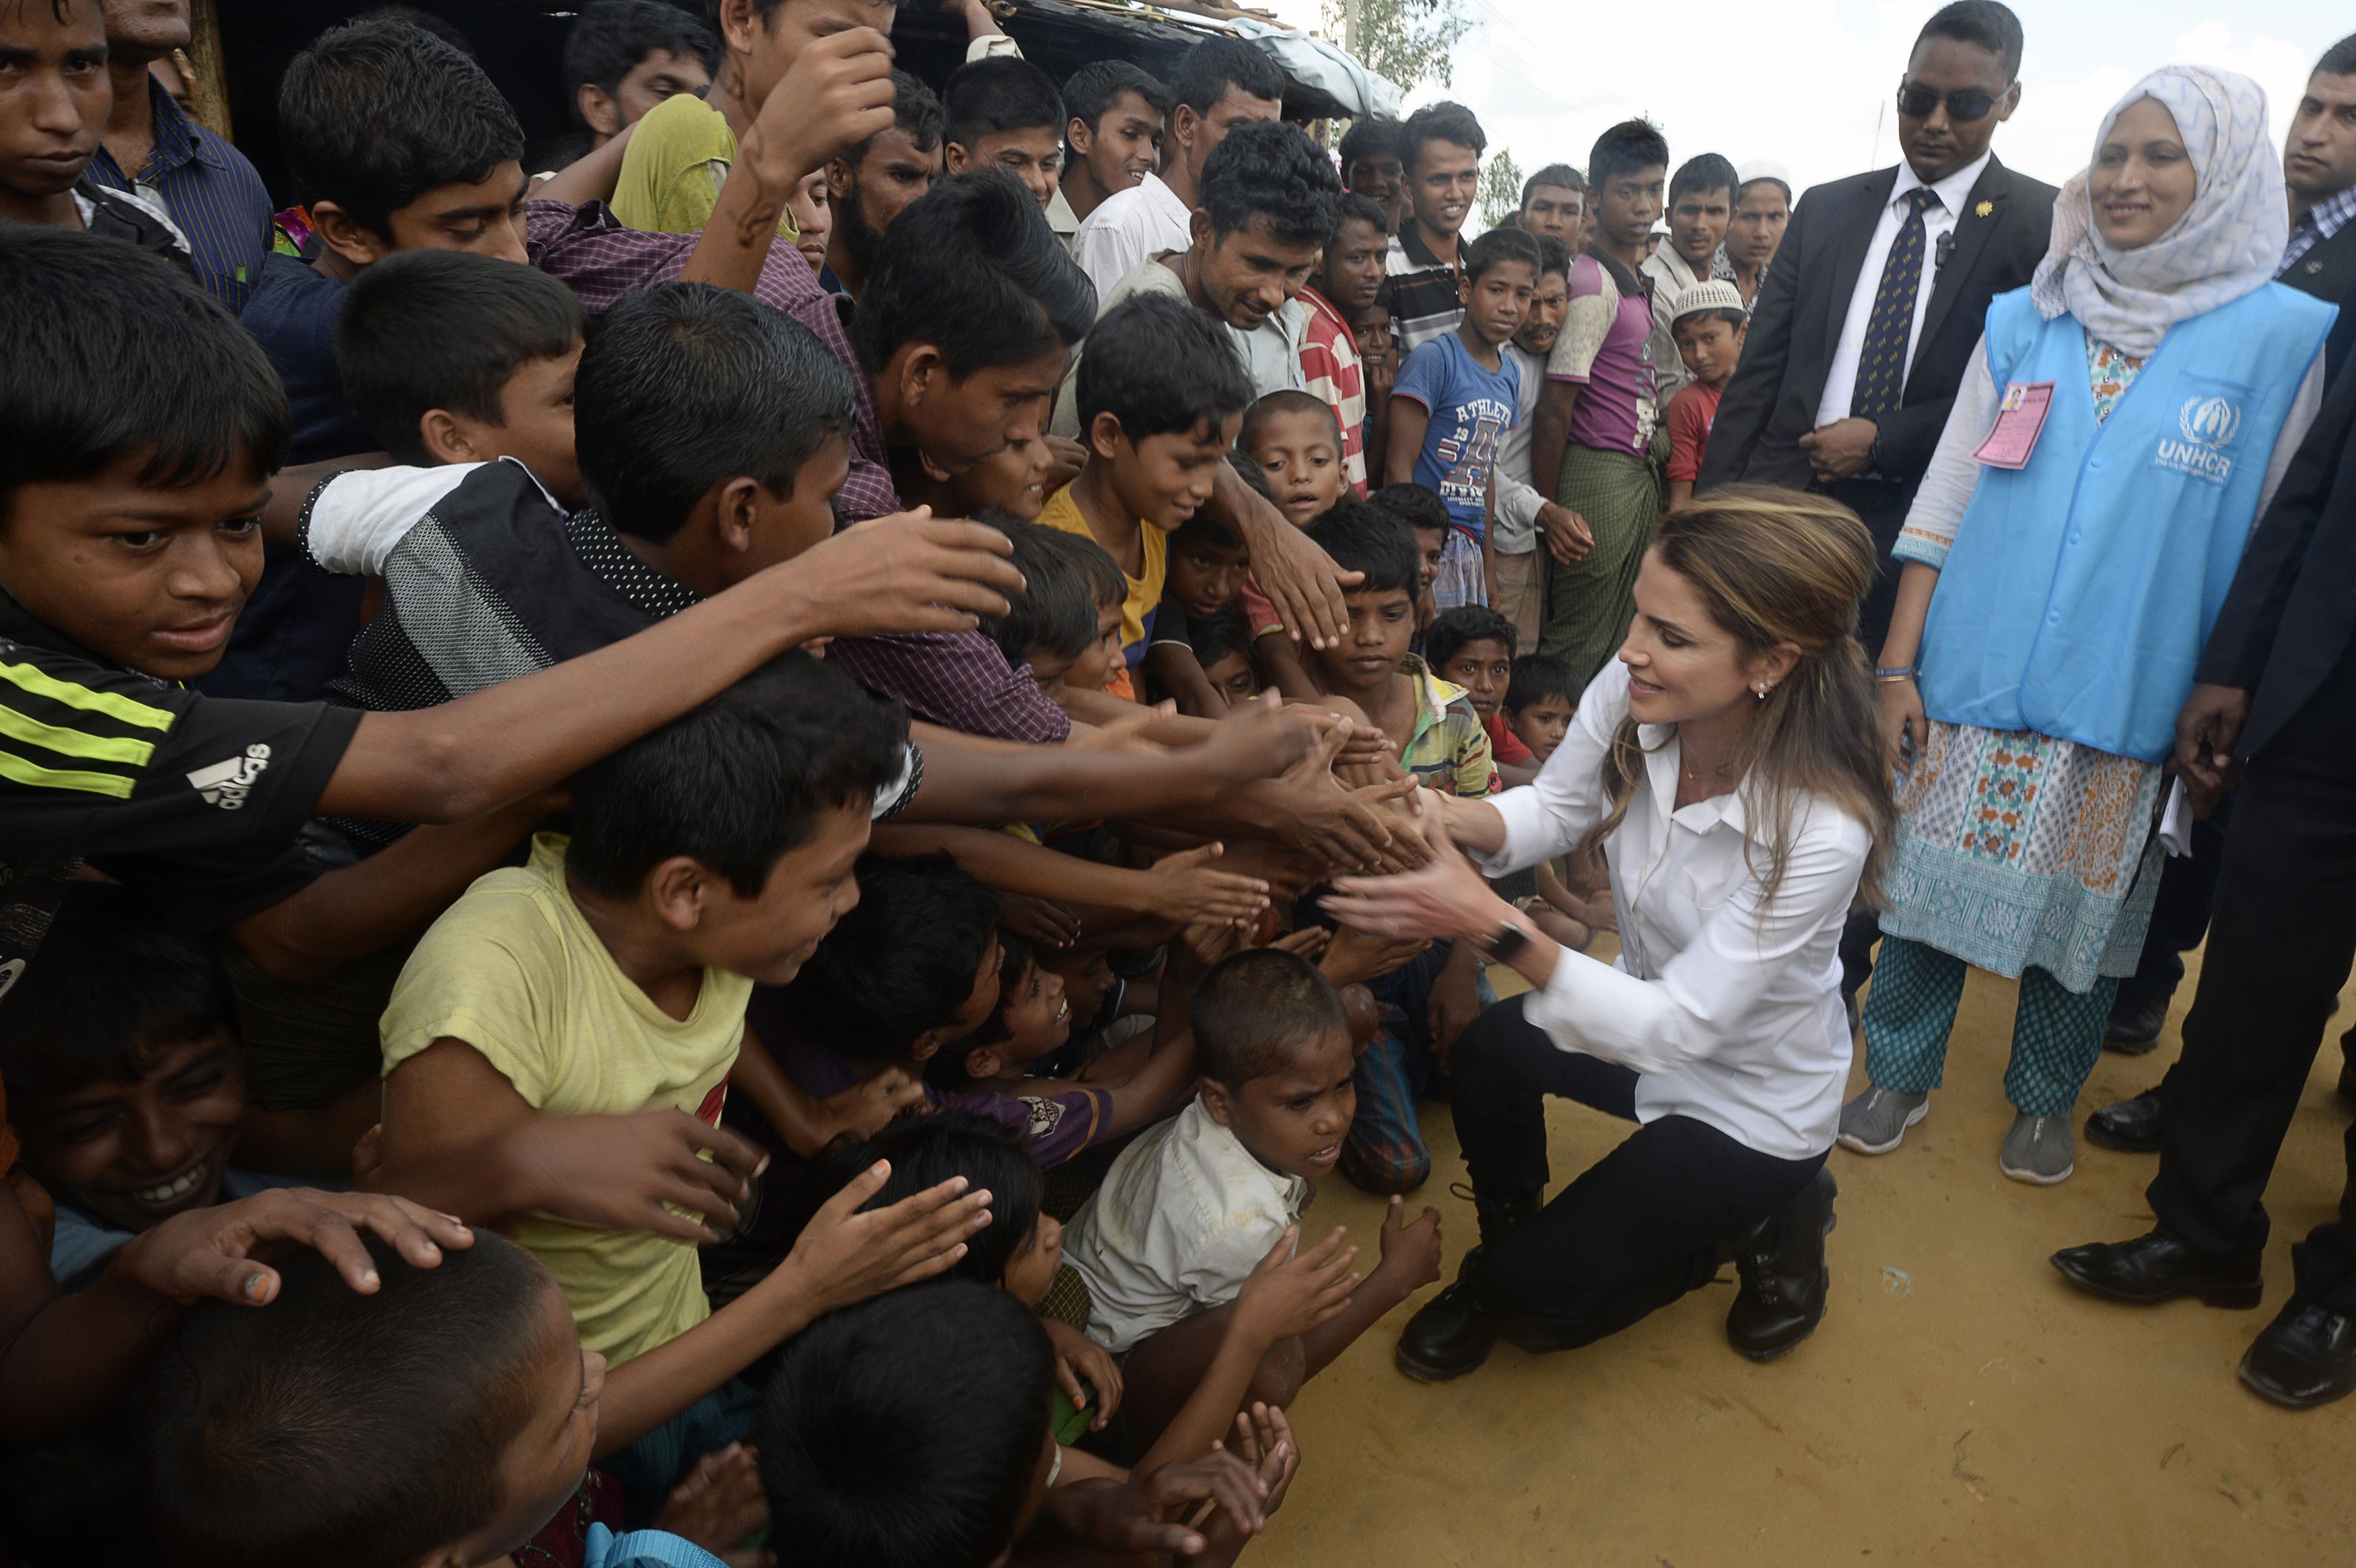 الملكة رانيا تحيى الأطفال اللاجئين خلال زيارتها لمسلمى الروهينجا فى بنجلاديش